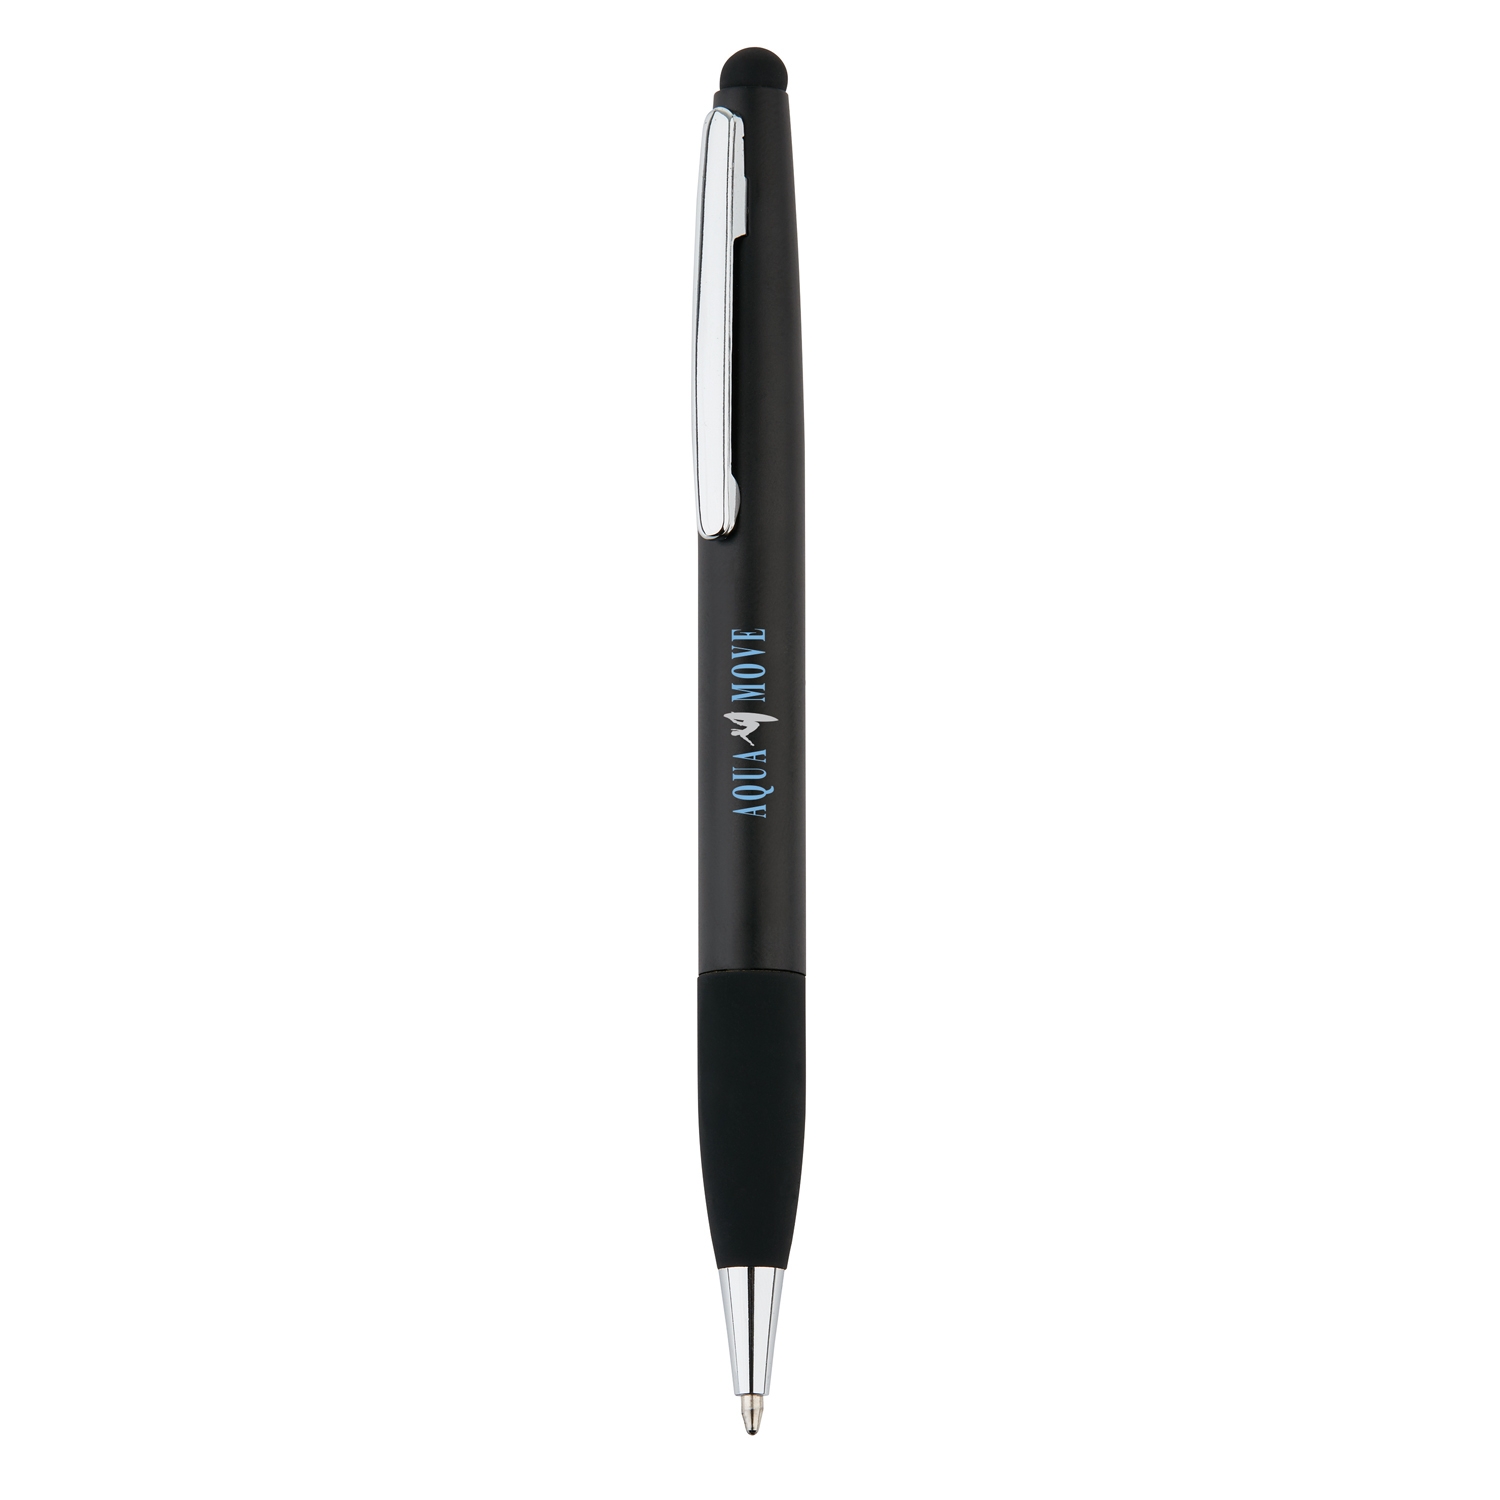 Ручка-стилус Touch 2 в 1, черный, нержавеющая сталь; abs